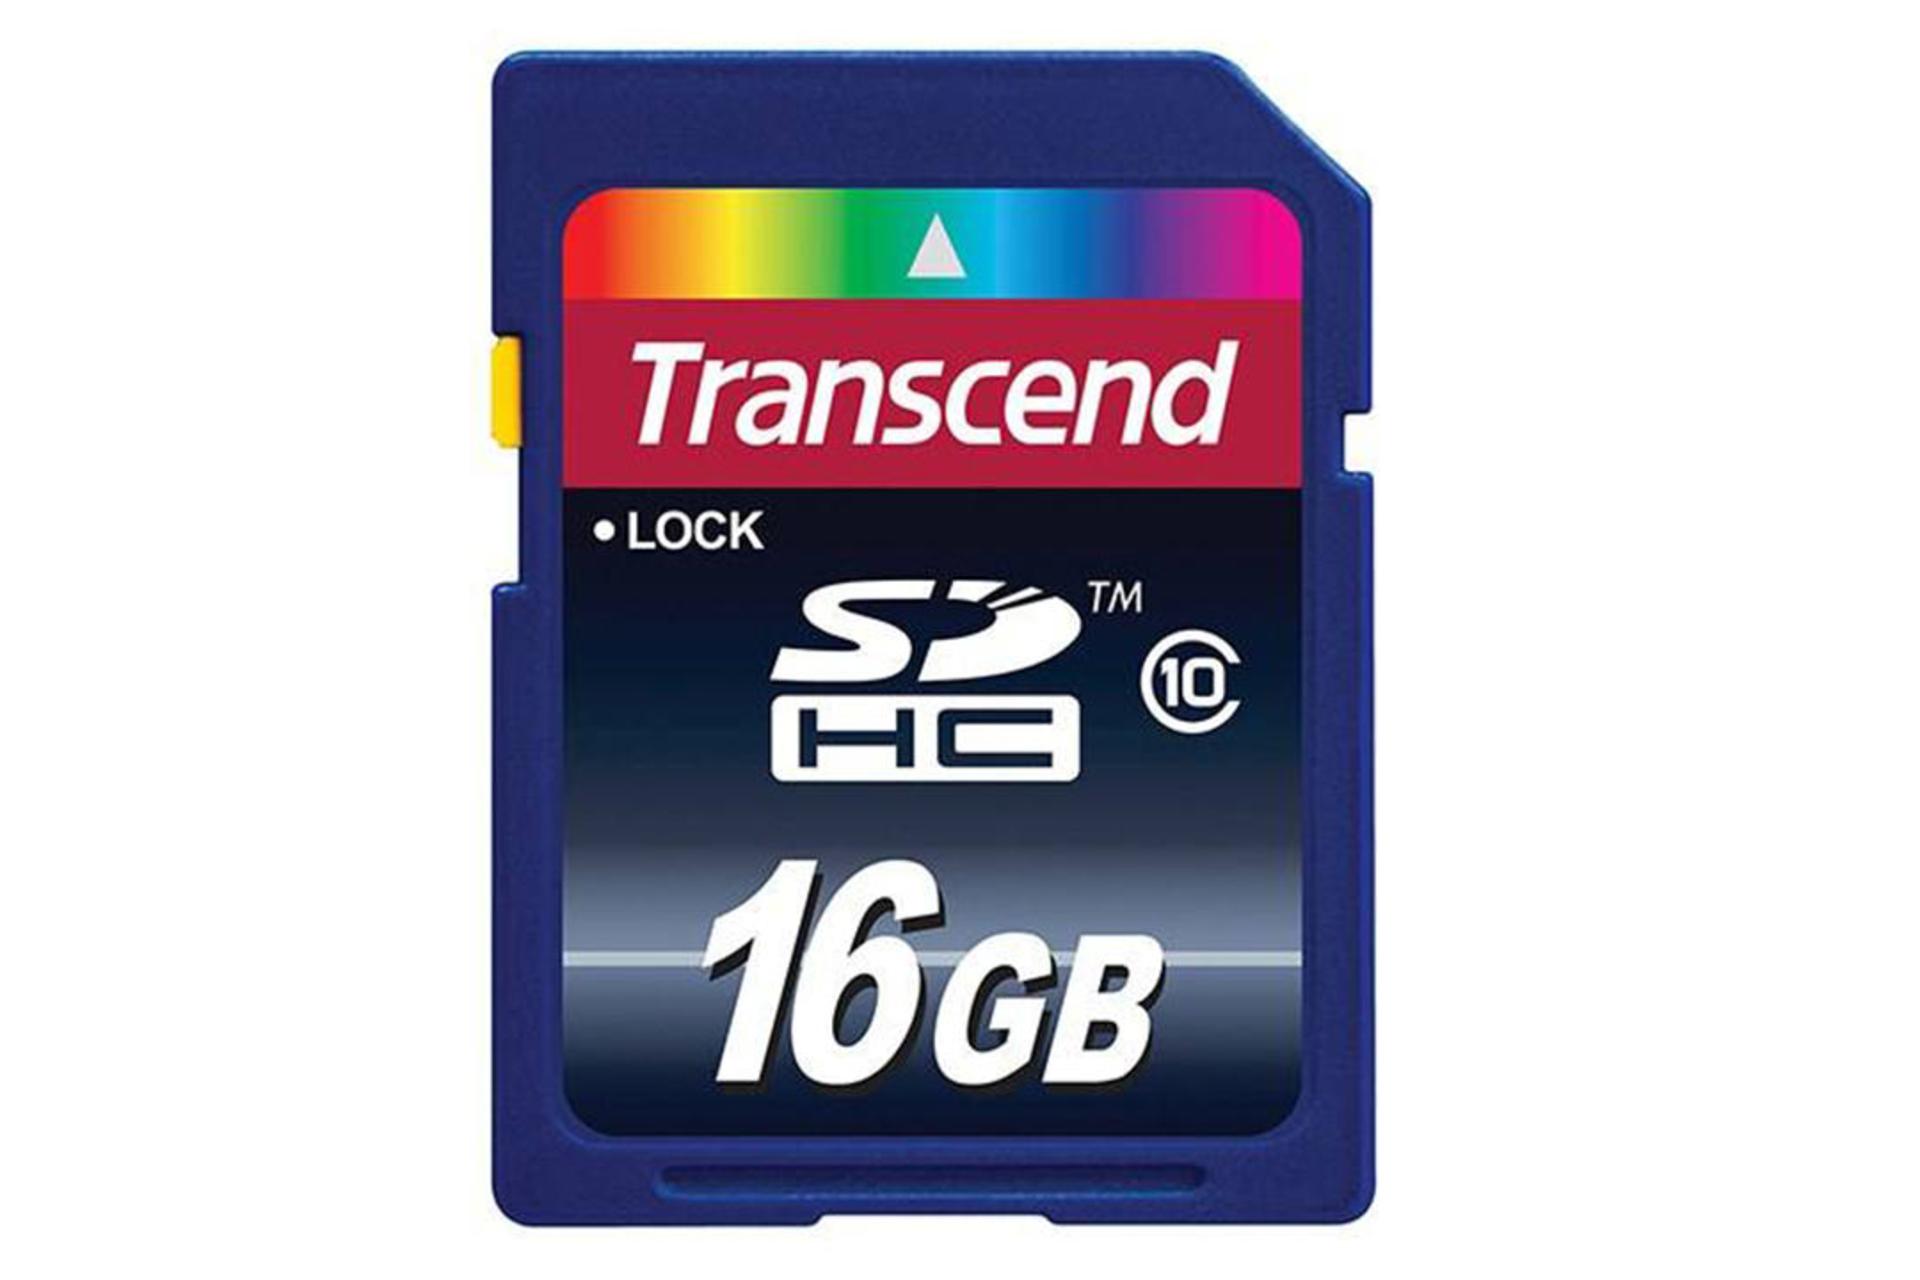 Transcend microSDHC Class 10 16GB